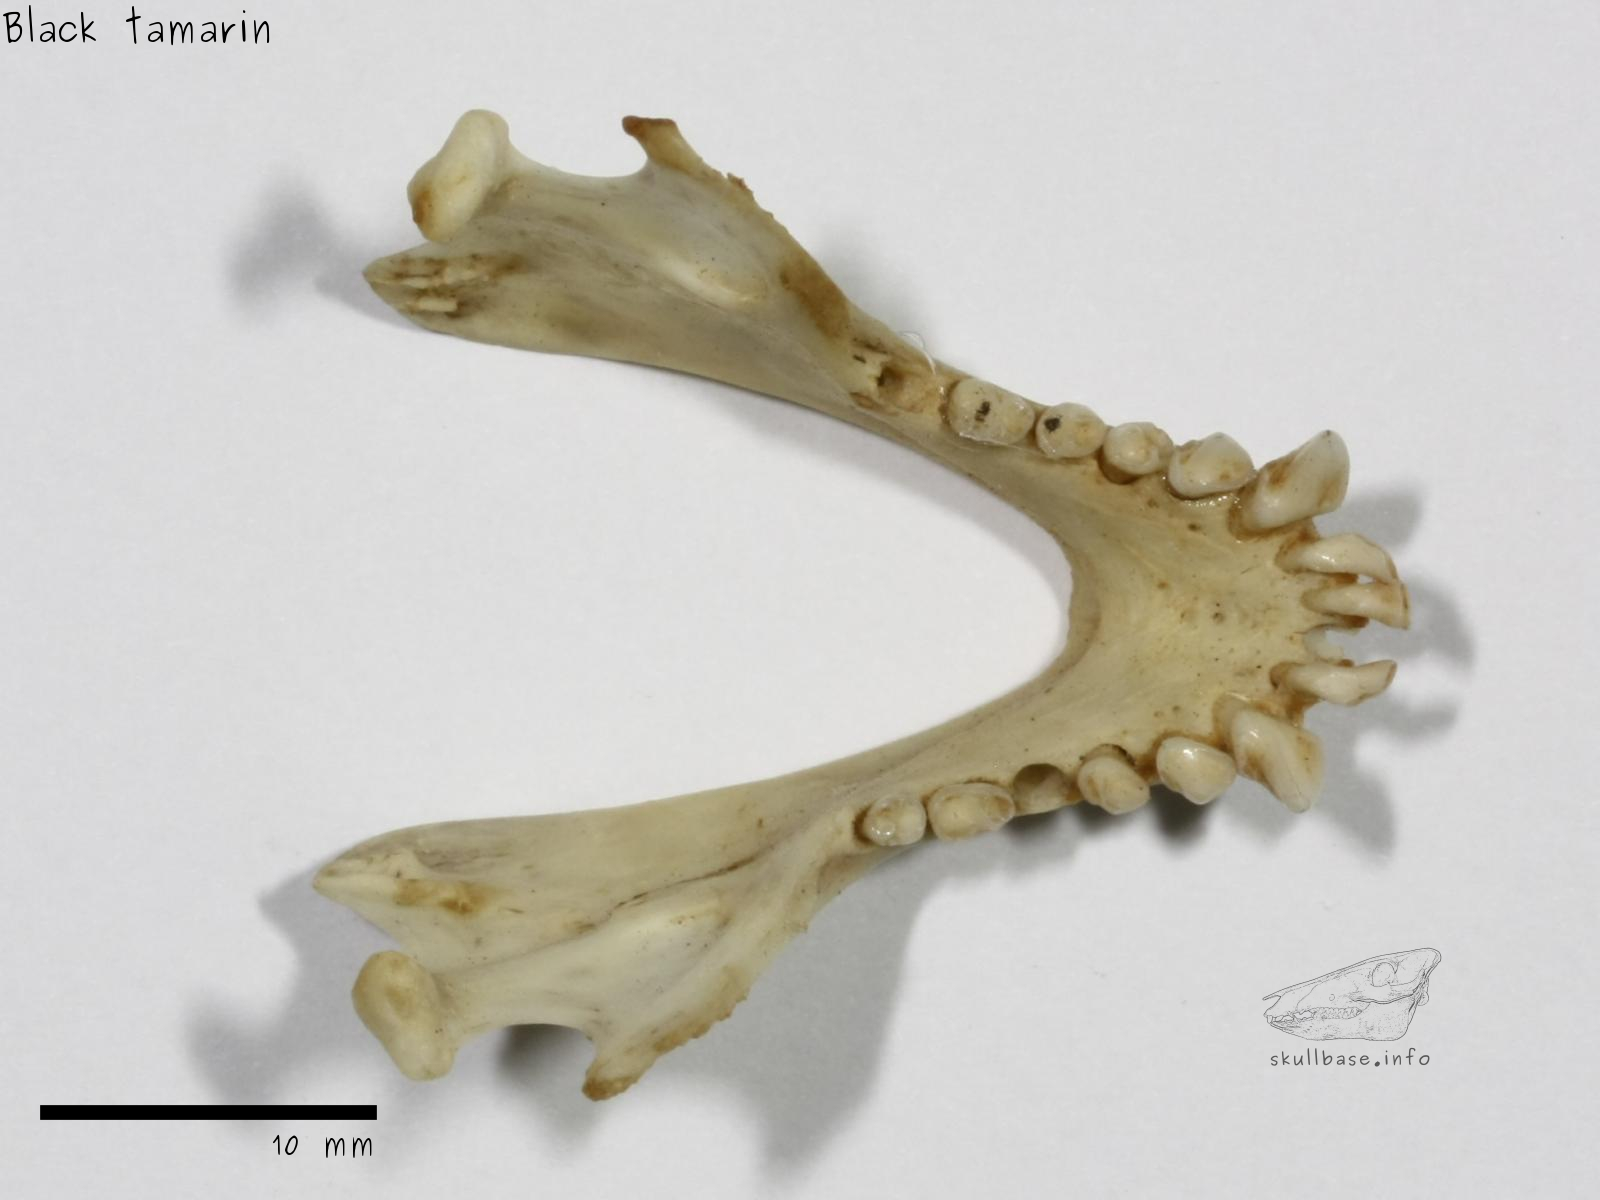 Black tamarin (Saguinus niger) jaw